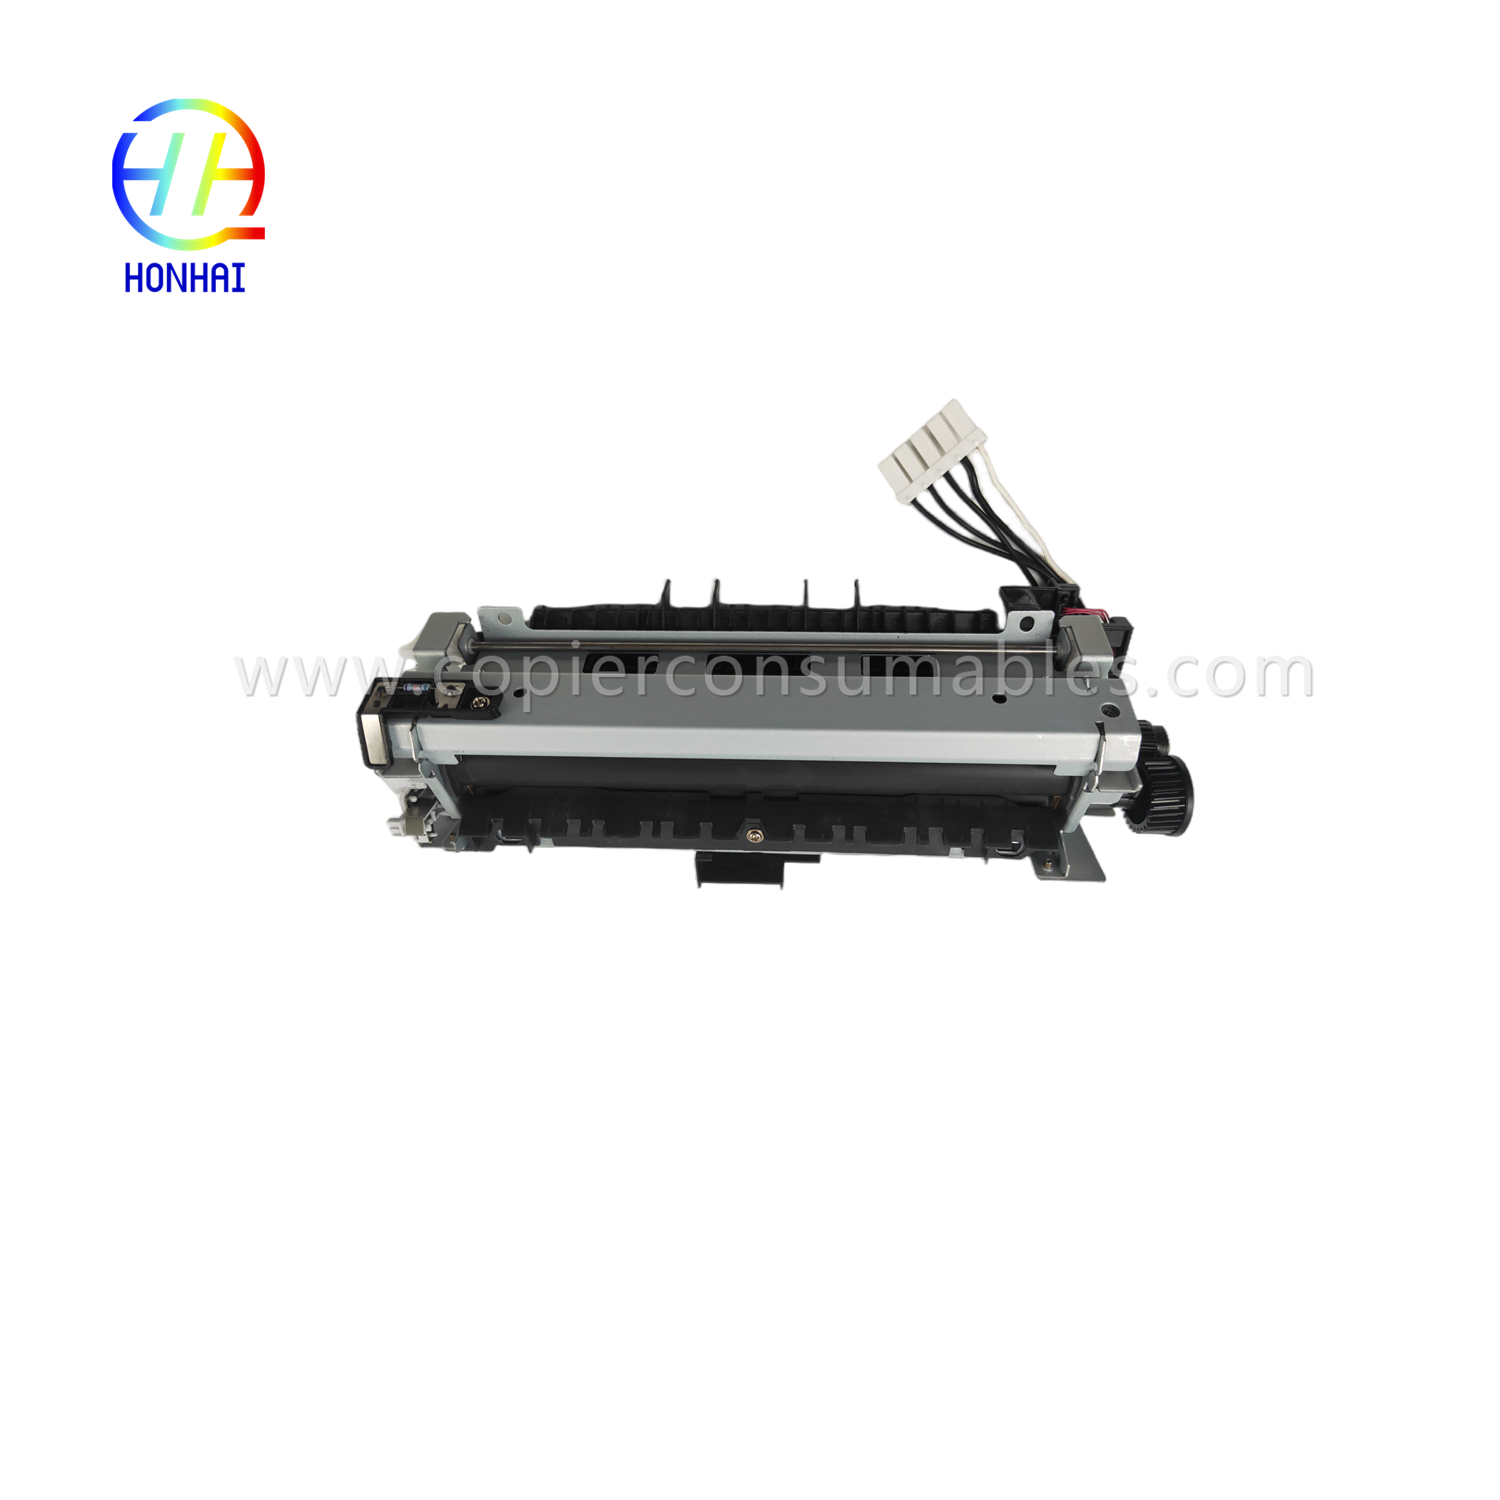 Fuser-samestelling 220V (Japan) vir HP 521 525 M521 M525 RM1-8508 RM1-8508-000 Fuser-eenheid